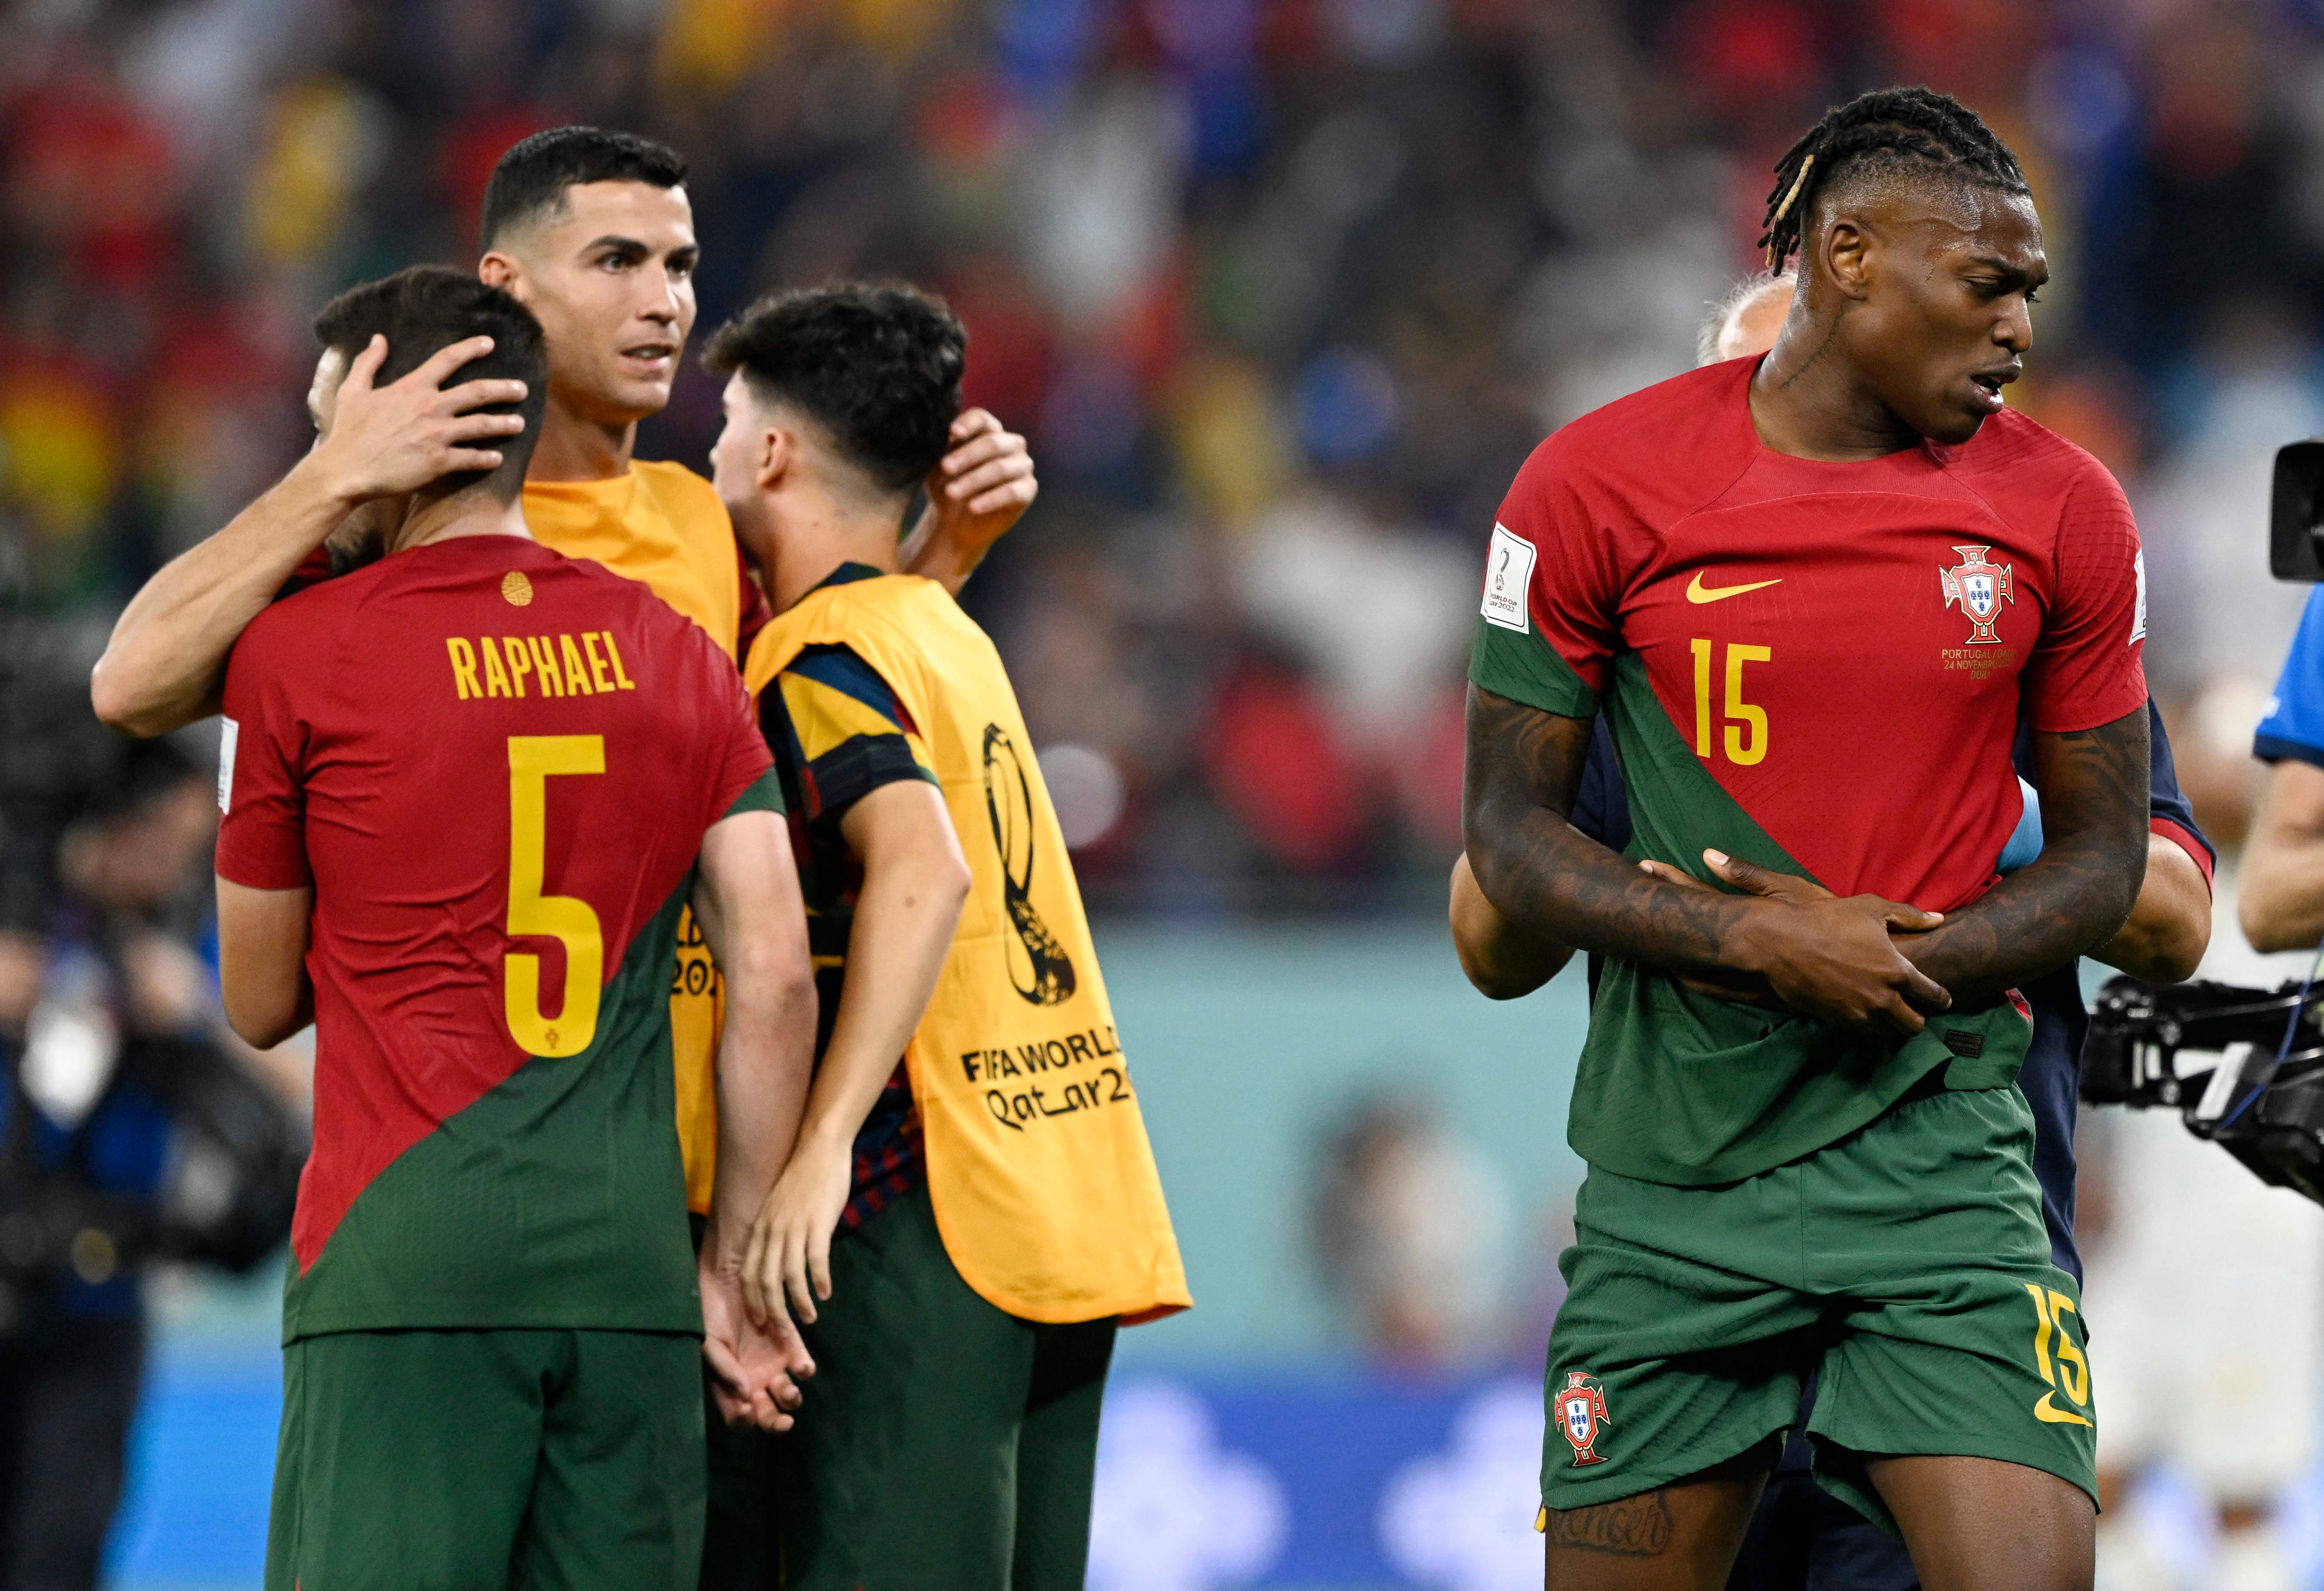 Portugal sufrió para quedarse con los tres puntos frente a Ghana este jueves. (Foto Prensa Libre: AFP)